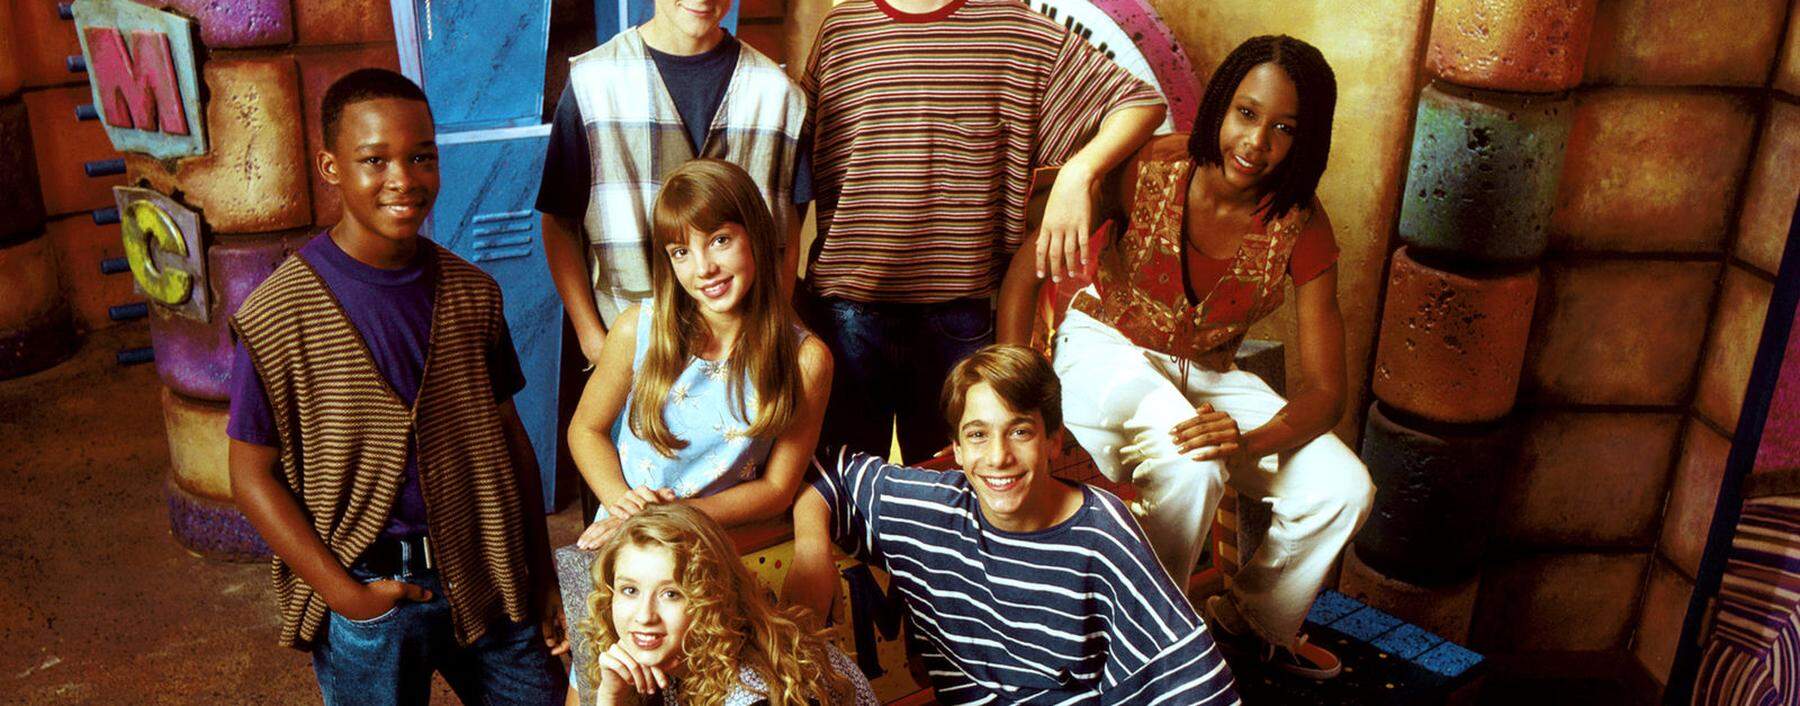 Die TV-Sendung „Mickey Mouse Club“ war ihr Bootcamp – und einige sind bis heute erfolgreich: Ryan Gosling und Justin Timberlake (hinten), Britney Spears (Mitte) und Christina Aguilera (vorn).